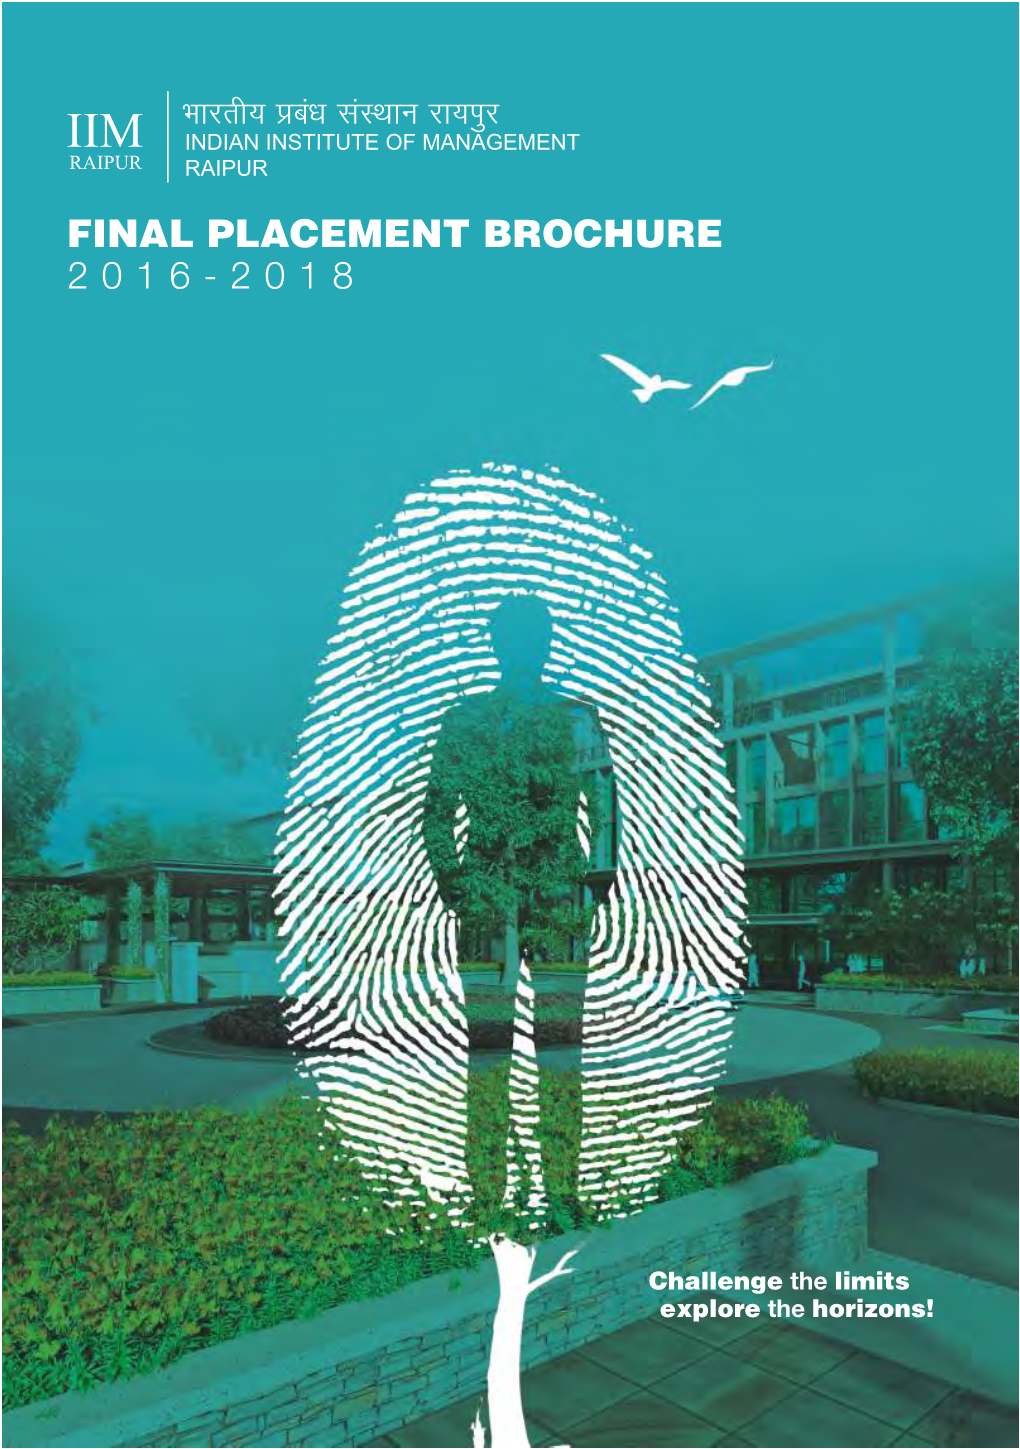 IIM Raipur Final Placement Brochure 2016-18.Cdr